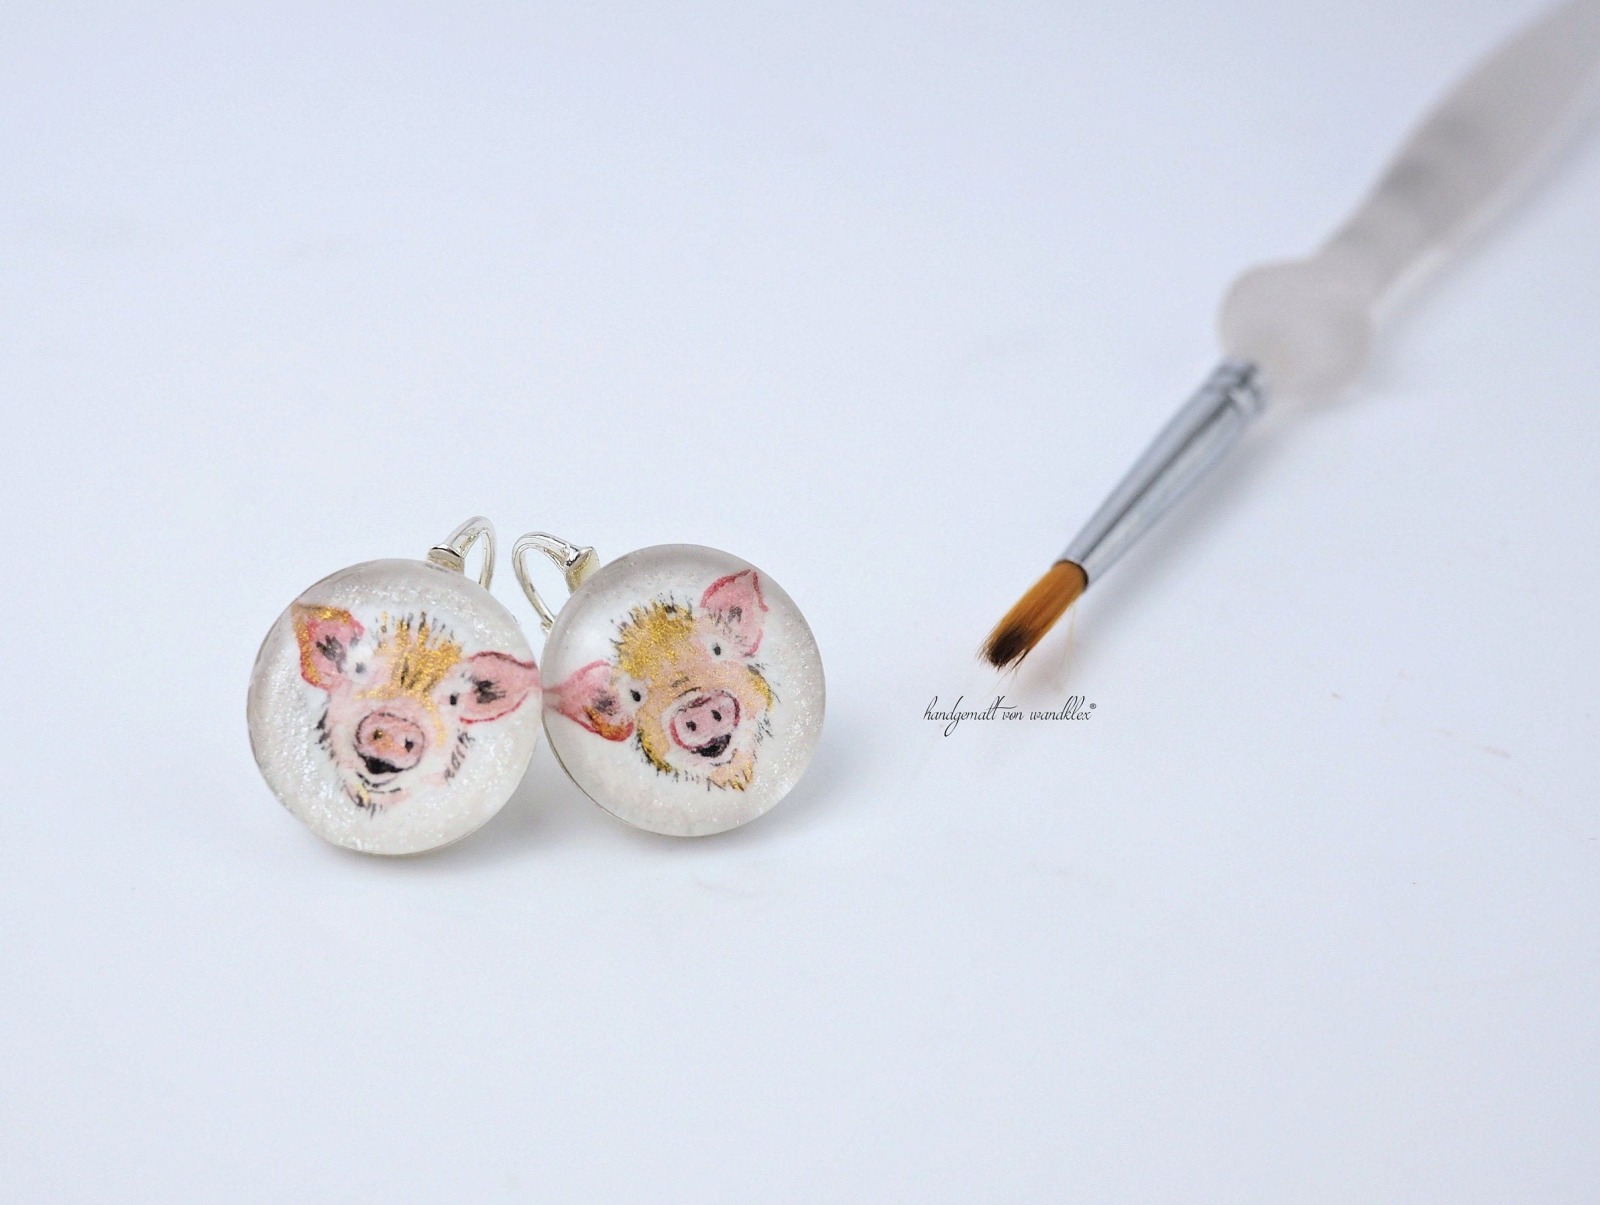 handgemalt Aquarell Schweinchen eingearbeitet in Edelstahl oder Echtsilberversion Hals- Ohr- oder